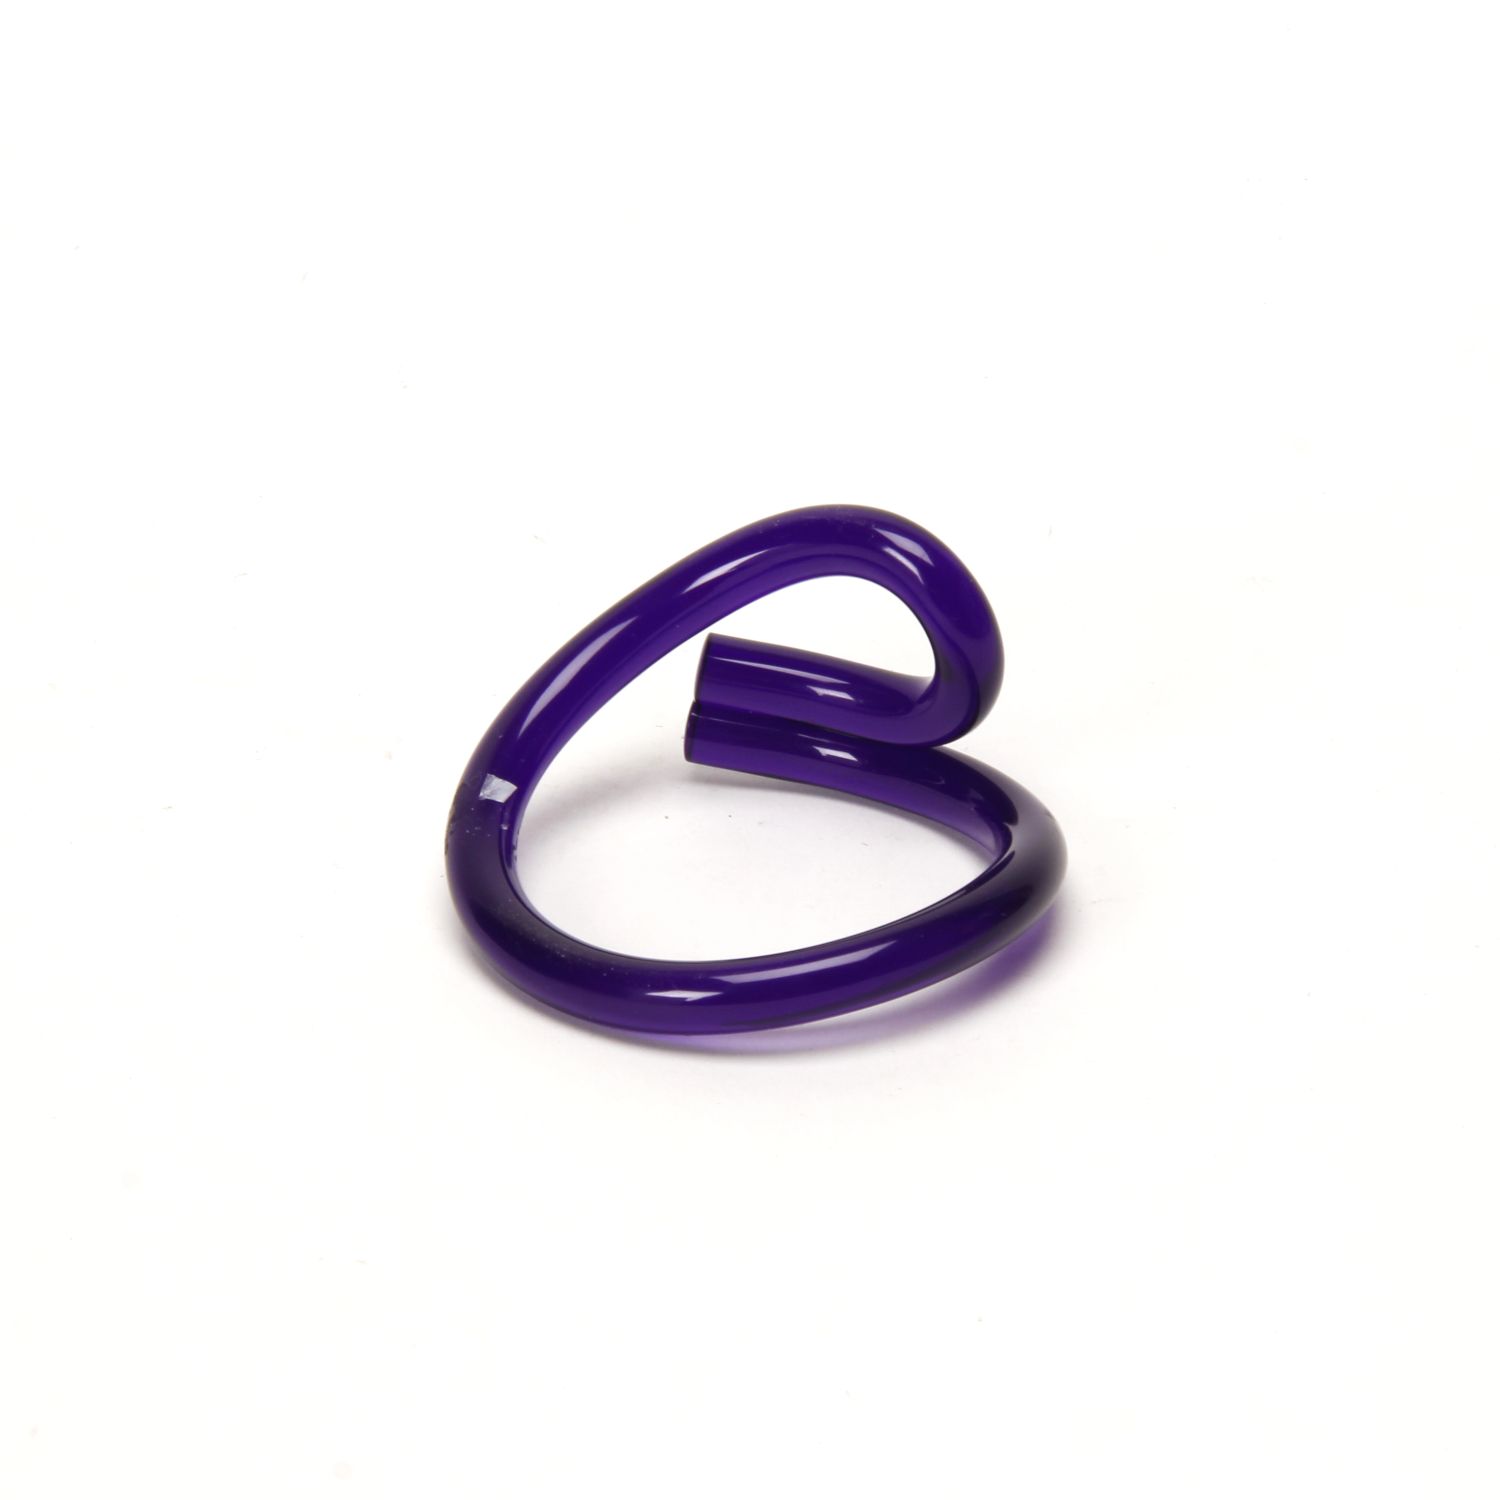 Corey Moranis: Loop Bracelet Purple Product Image 1 of 4